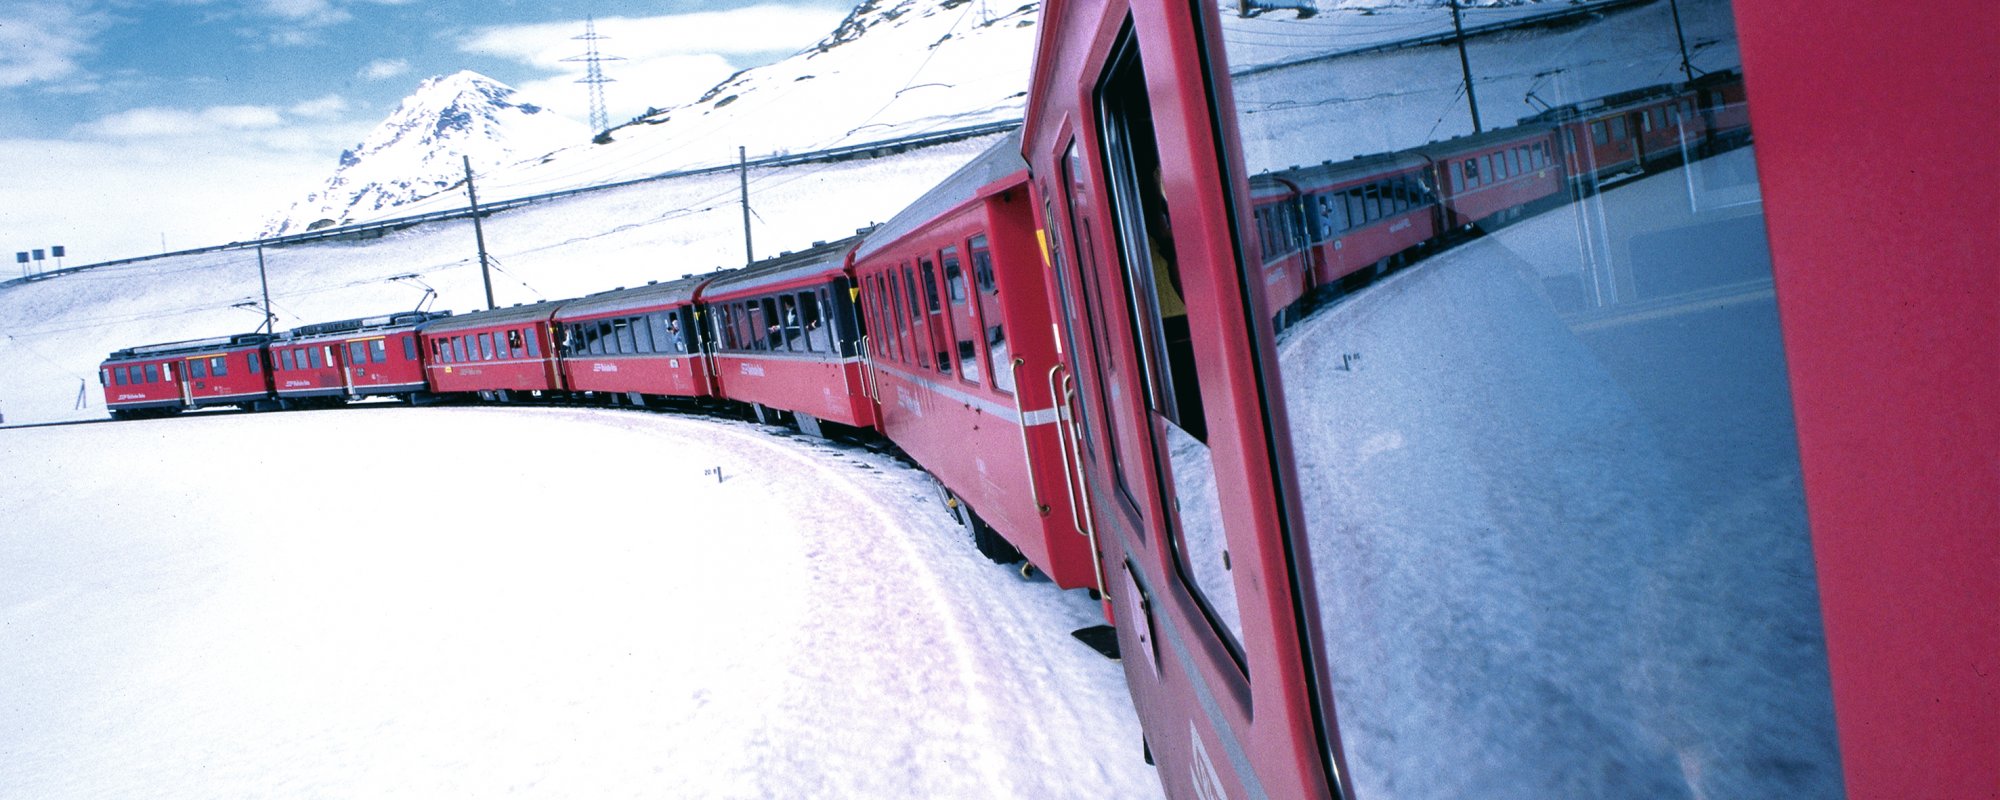 Bernina-Express auf dem Bernina Pass